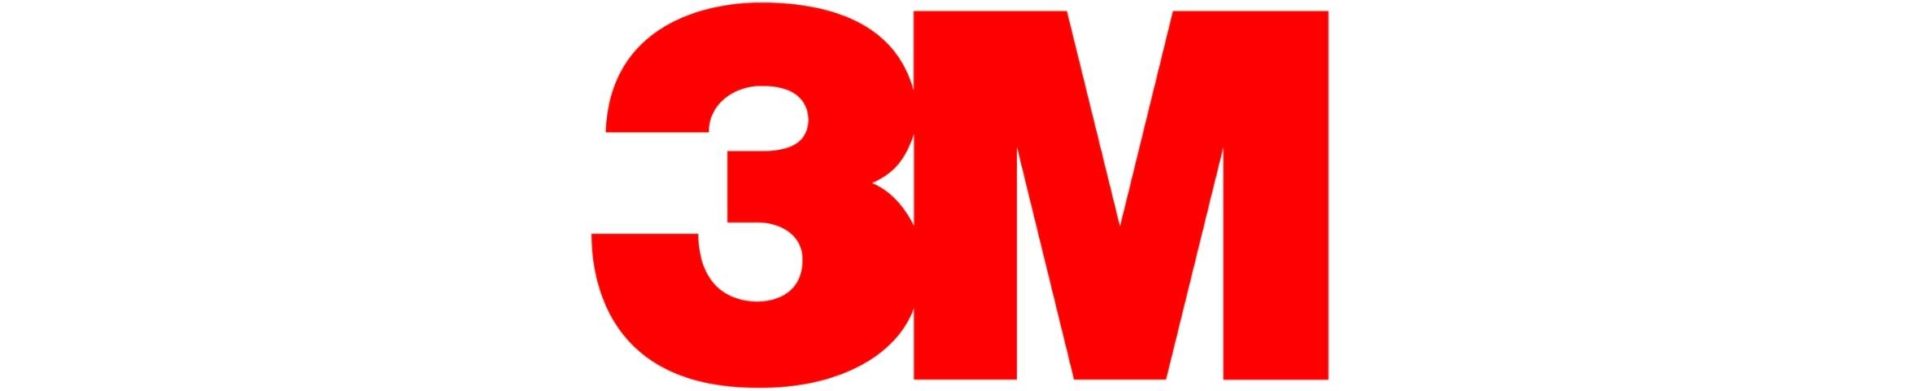 red 3M logo